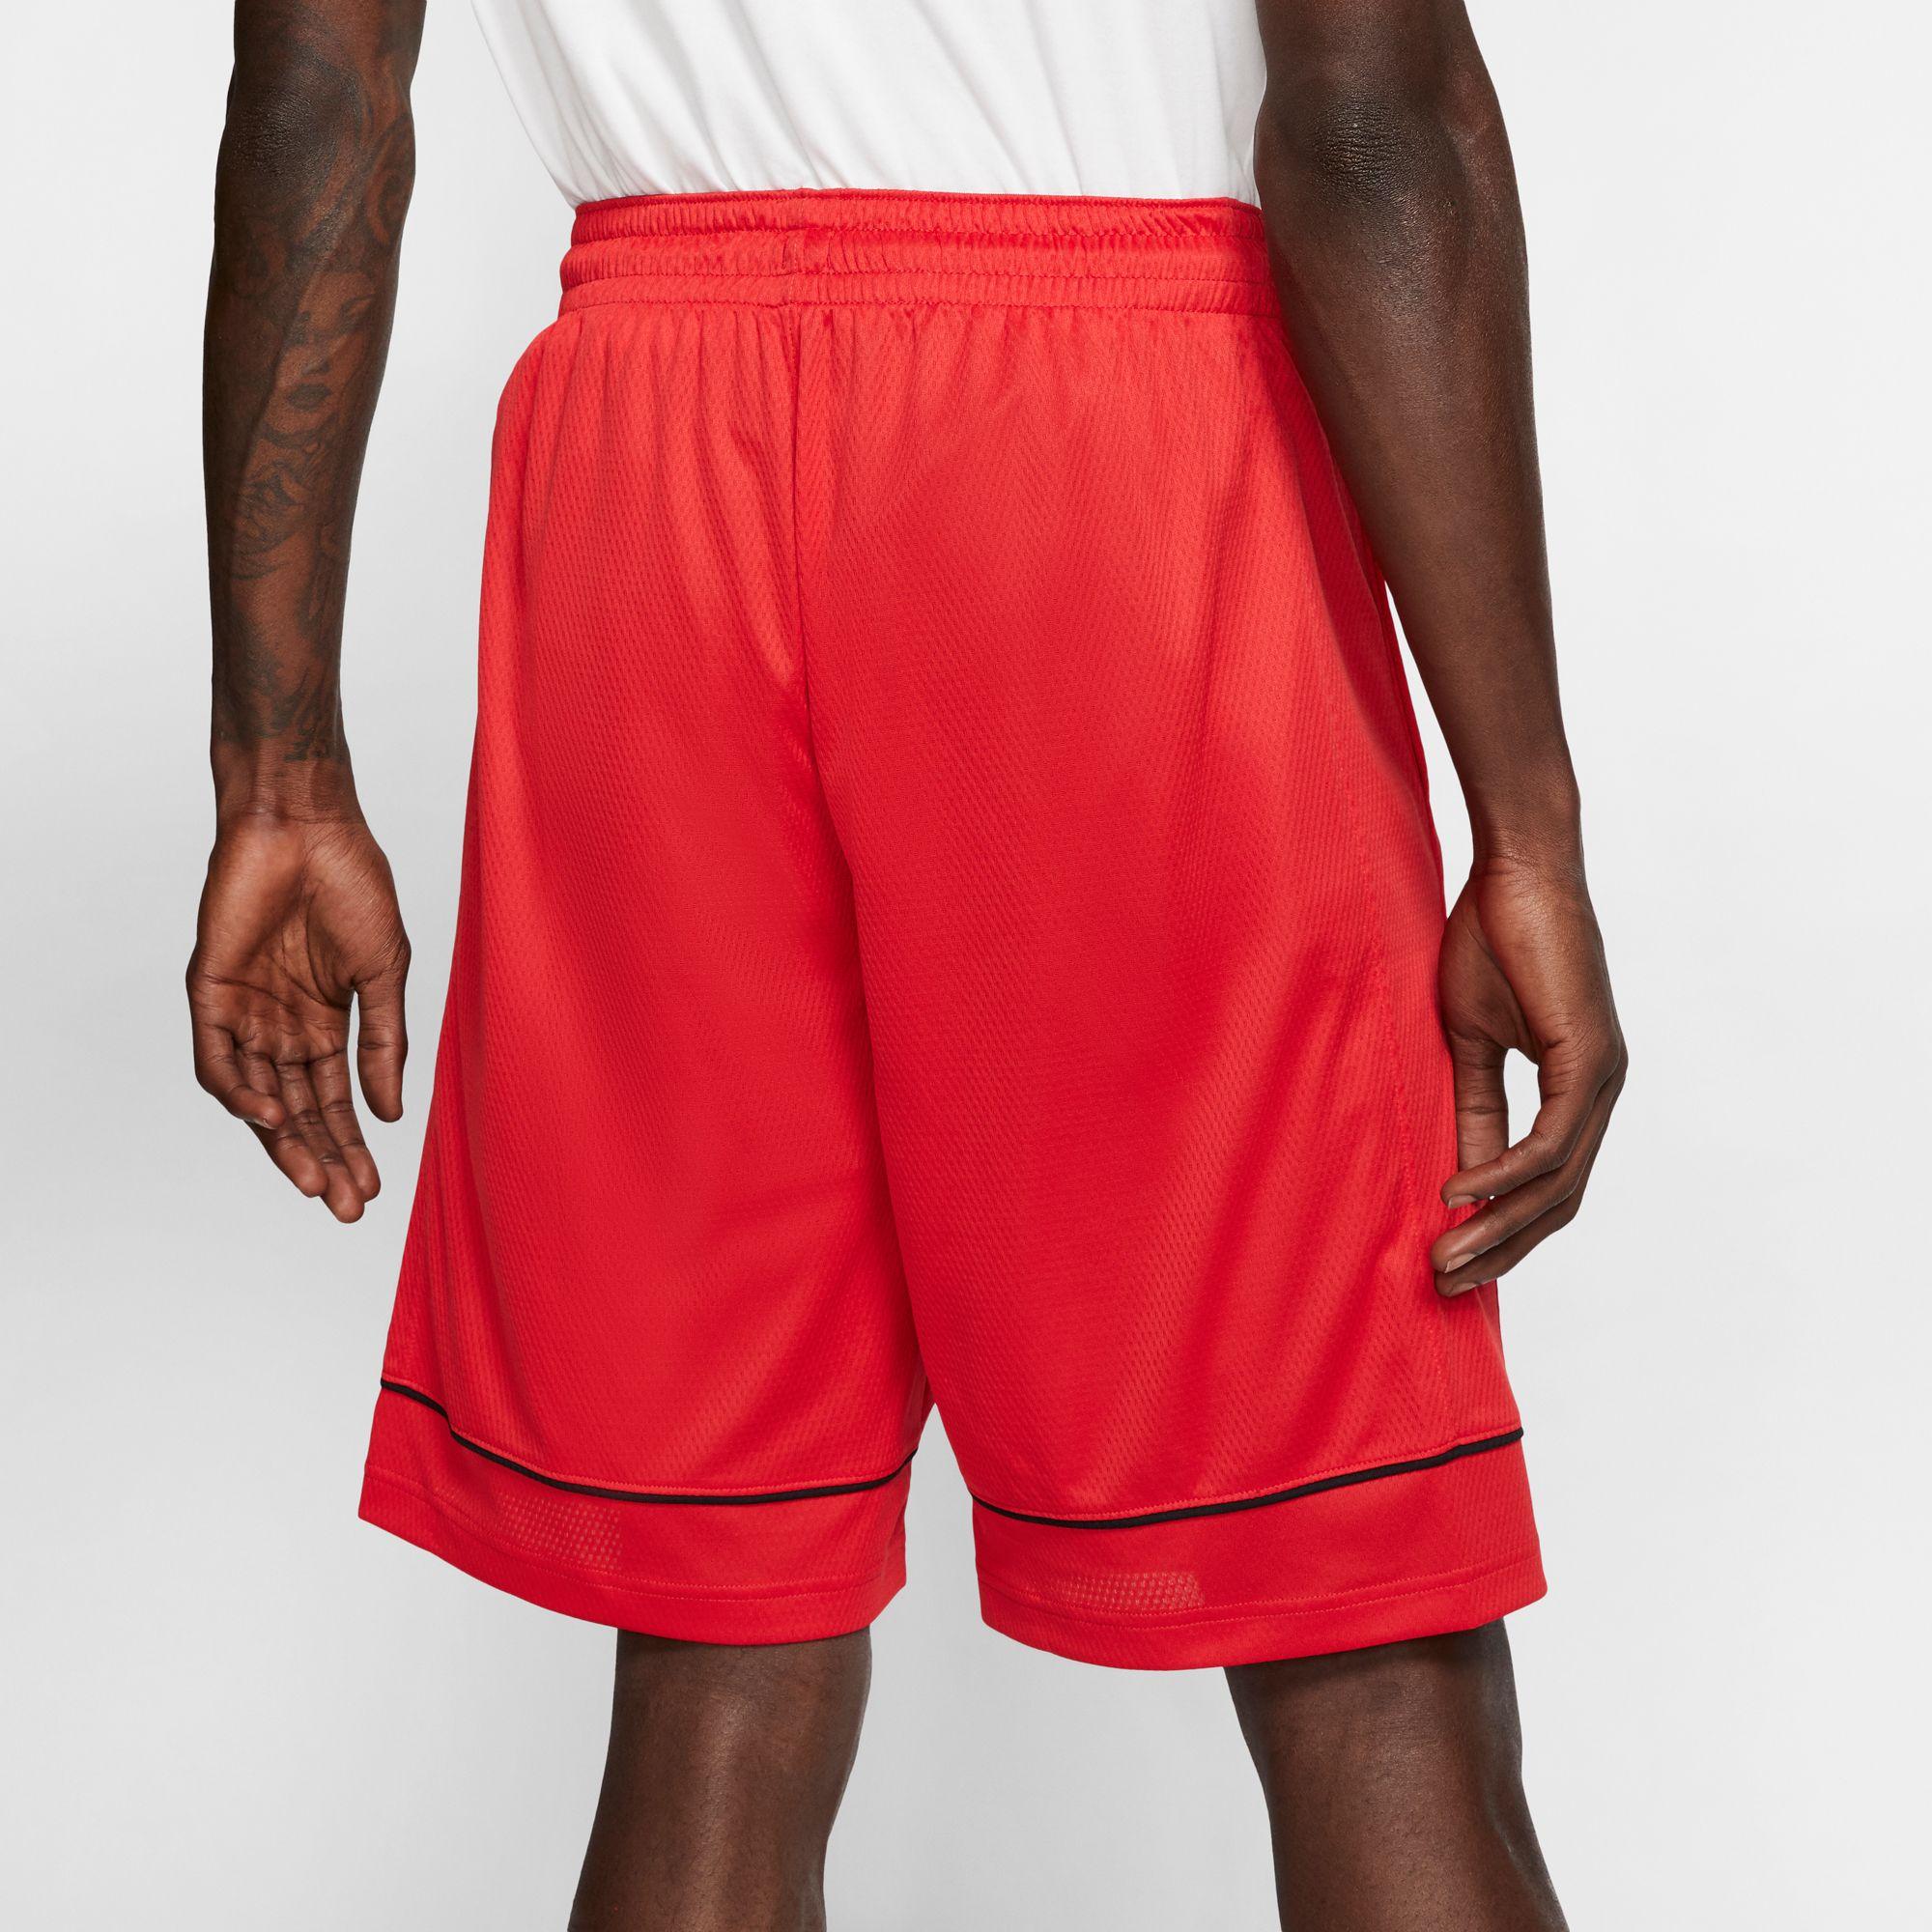 Nike Fastbreak Basketball Shorts in University Red (Red) for Men - Lyst